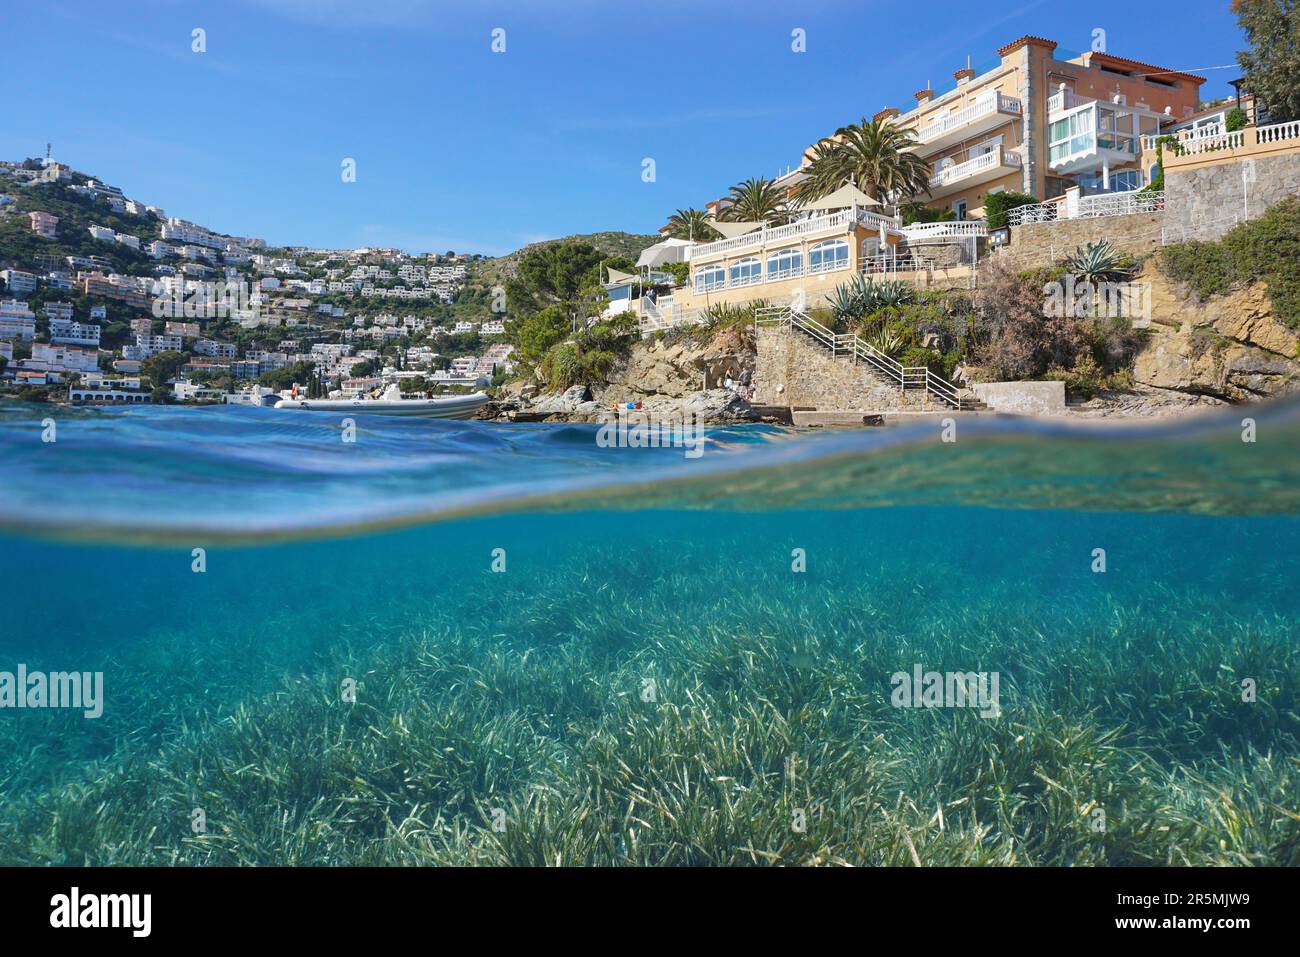 Hôtel côtier sur la rive de la mer Méditerranée en Espagne avec des herbiers marins, vue partagée sur sous la surface de l'eau, Costa Brava, ville de Roses Banque D'Images